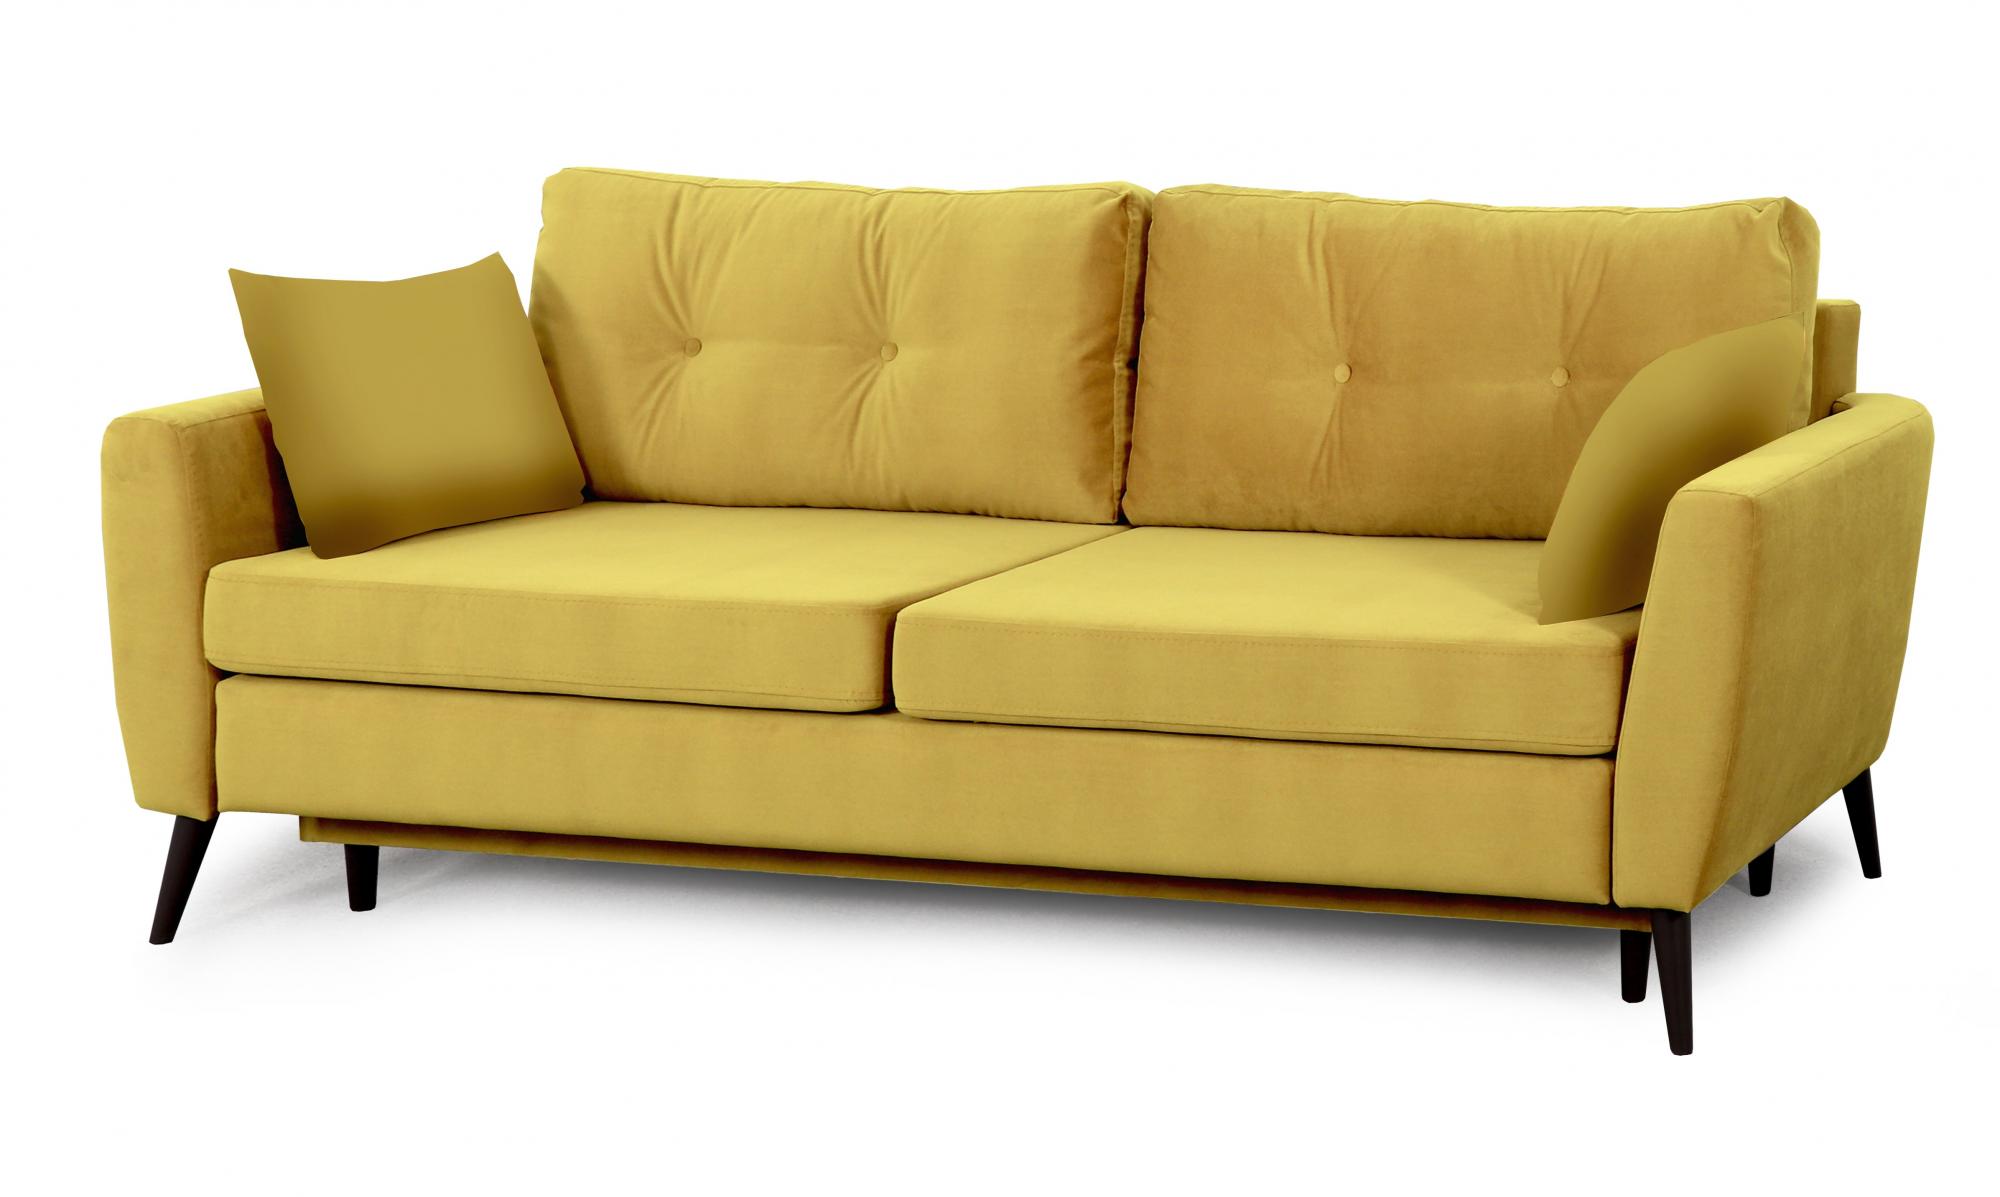 Купить диван-кровать калгари-2 вариант 4 от производителя недорого сдоставкой по России